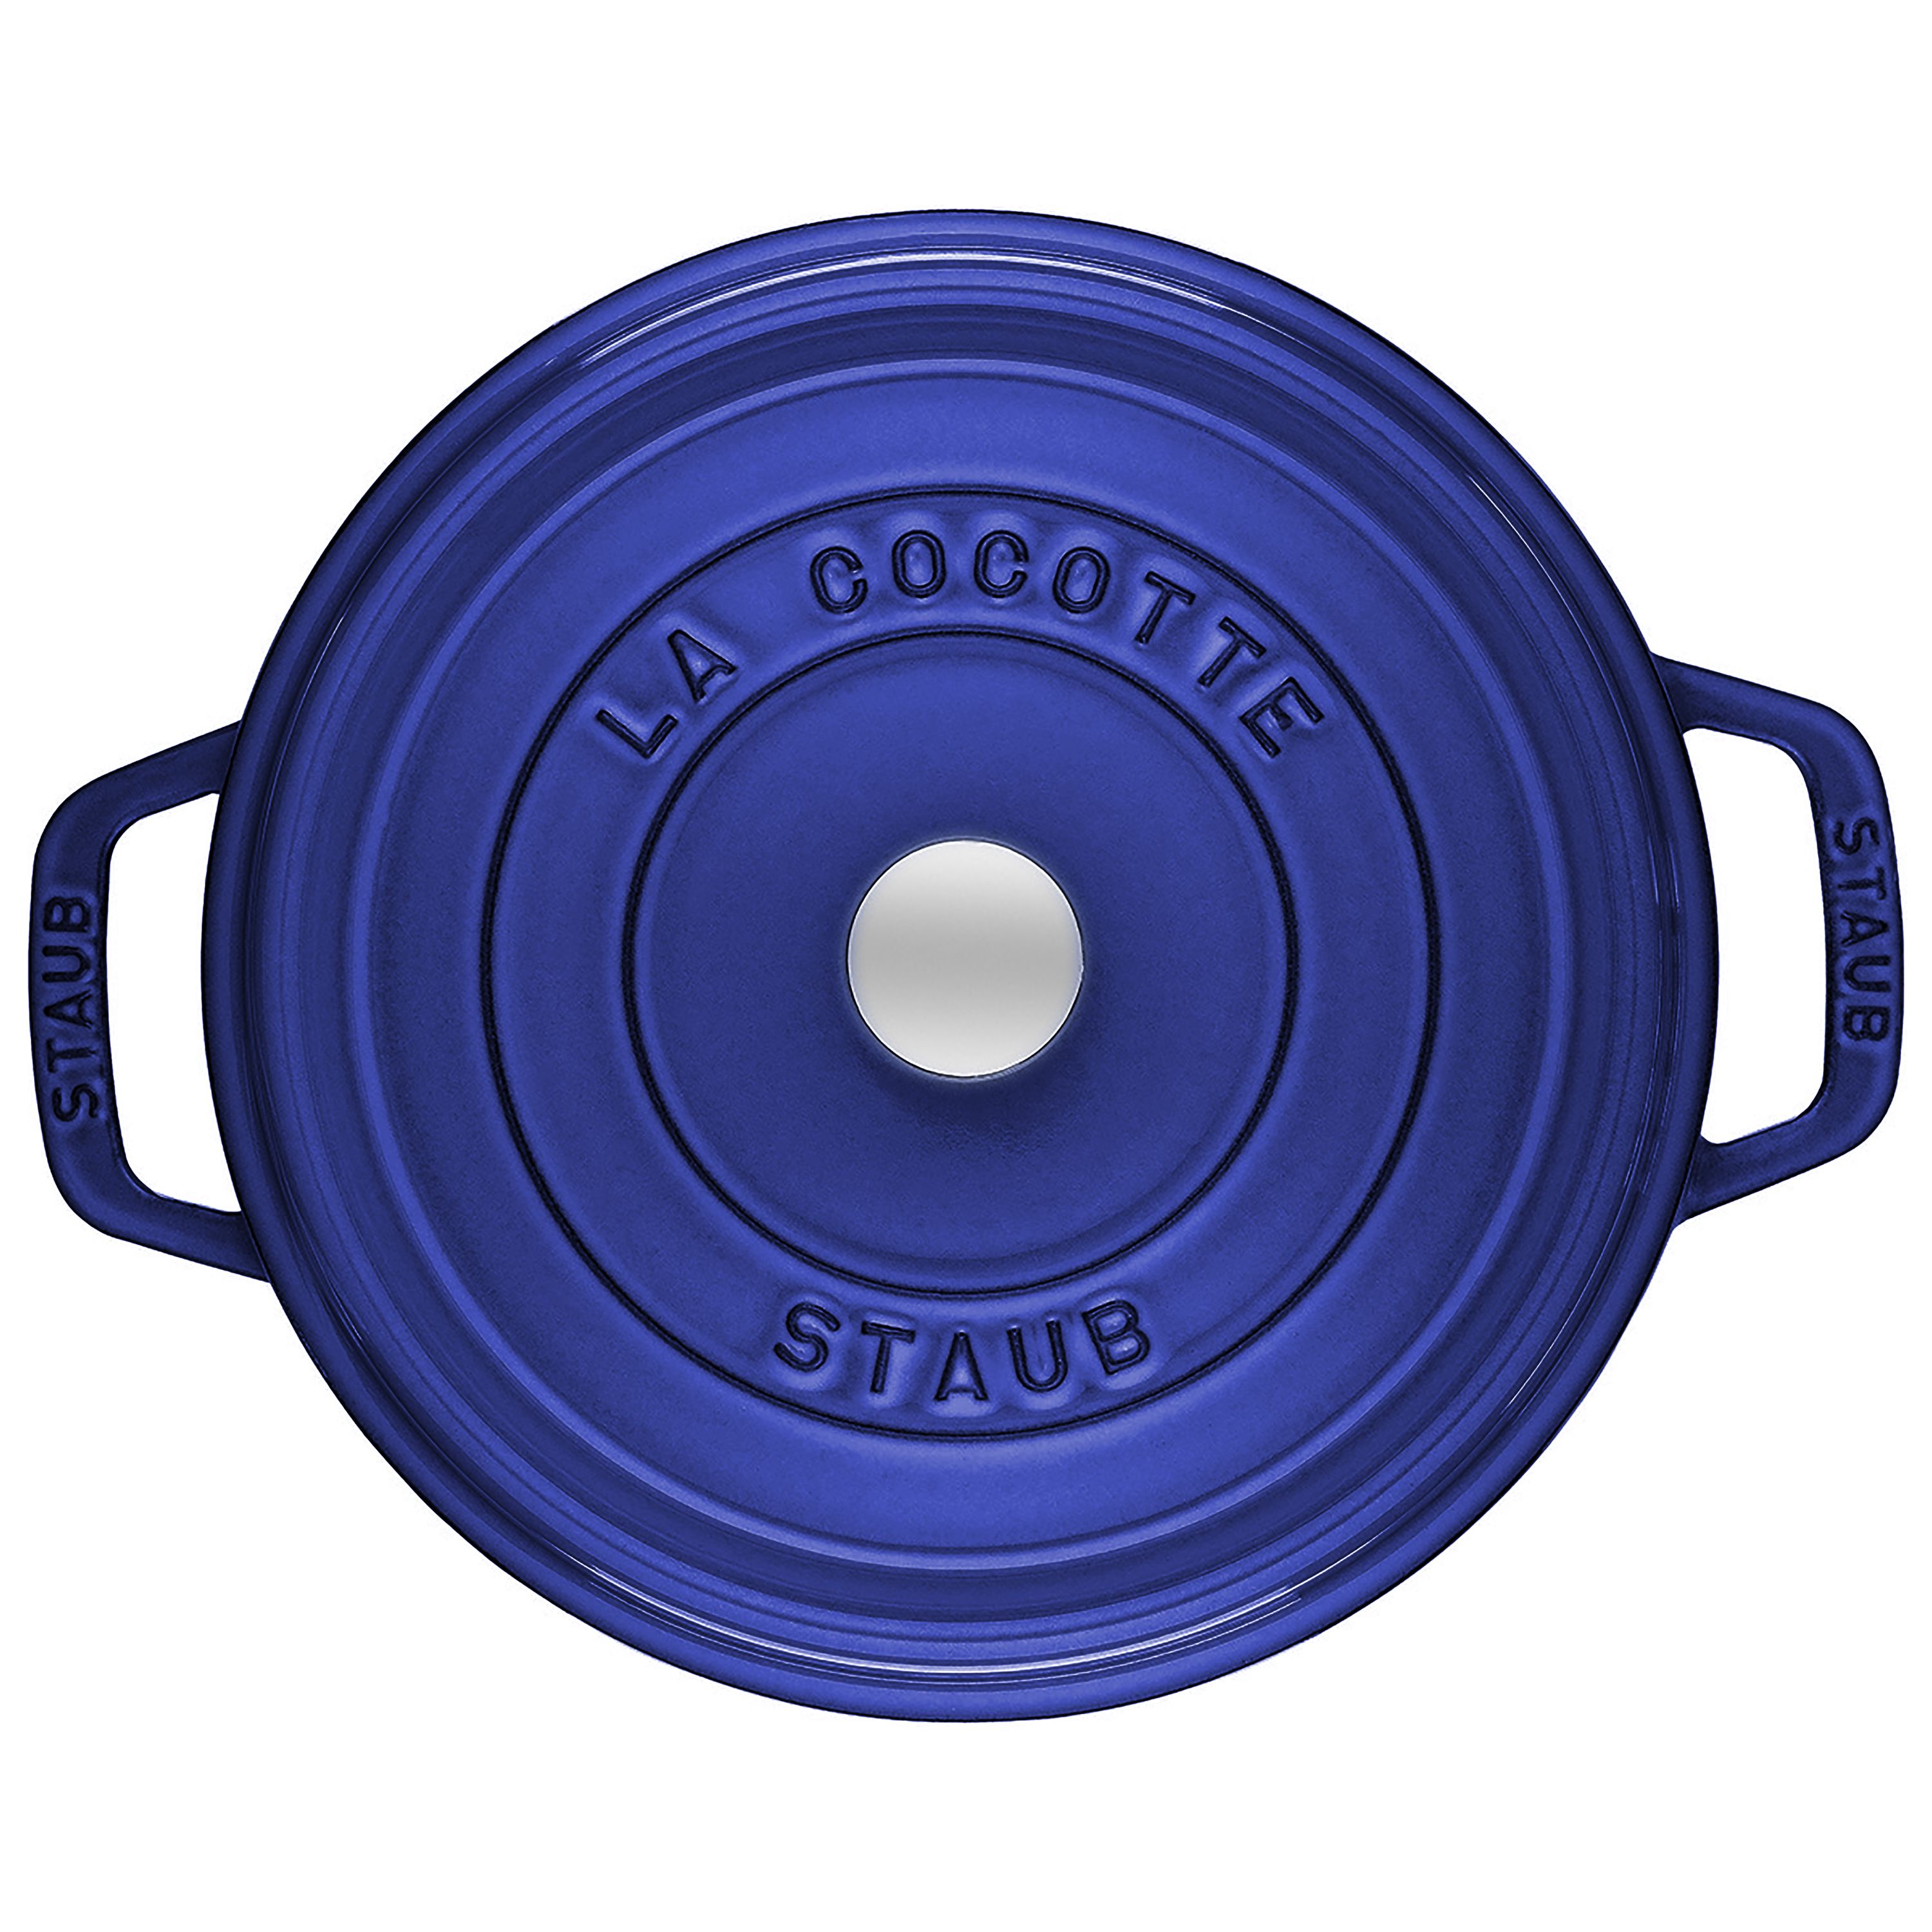 Staub 1102691 Cast Iron 5.5 QT Round Cocotte Dark Blue for sale online